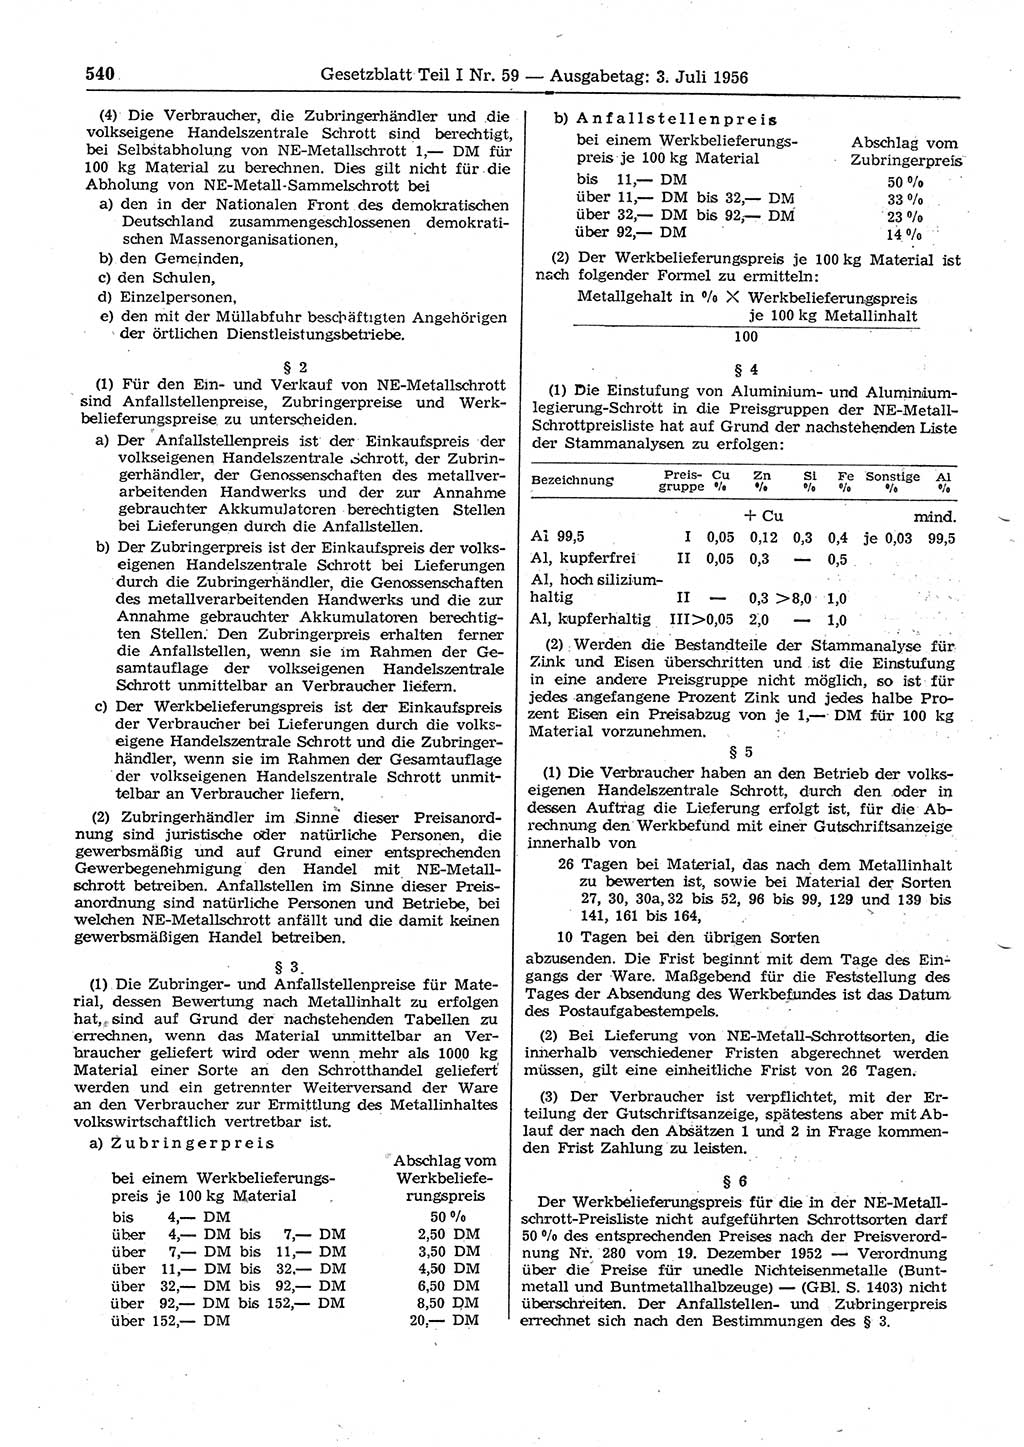 Gesetzblatt (GBl.) der Deutschen Demokratischen Republik (DDR) Teil Ⅰ 1956, Seite 540 (GBl. DDR Ⅰ 1956, S. 540)